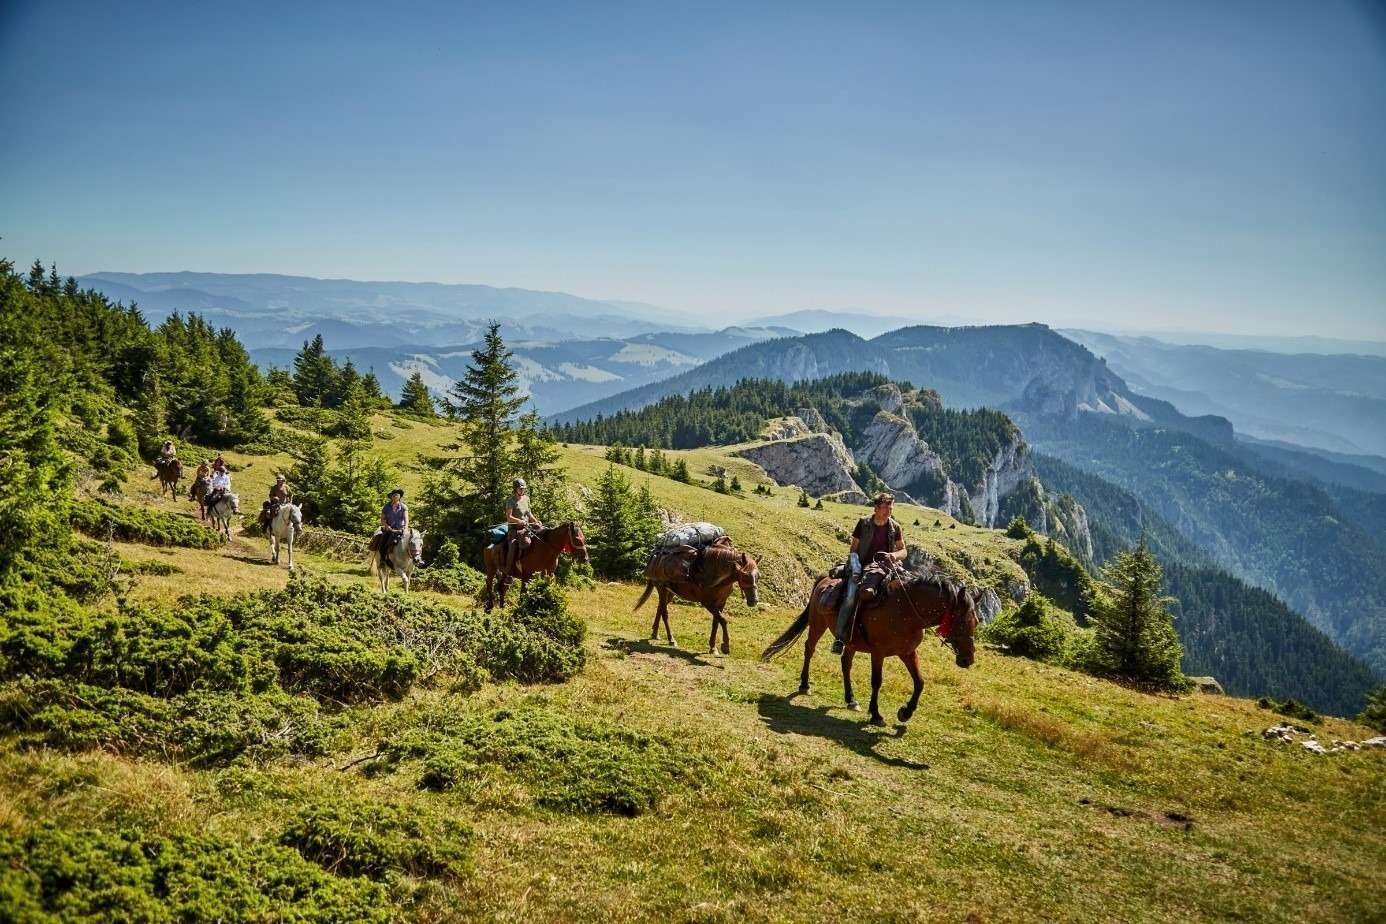 Reitergruppe im freien Gelände mit schönem Panorama